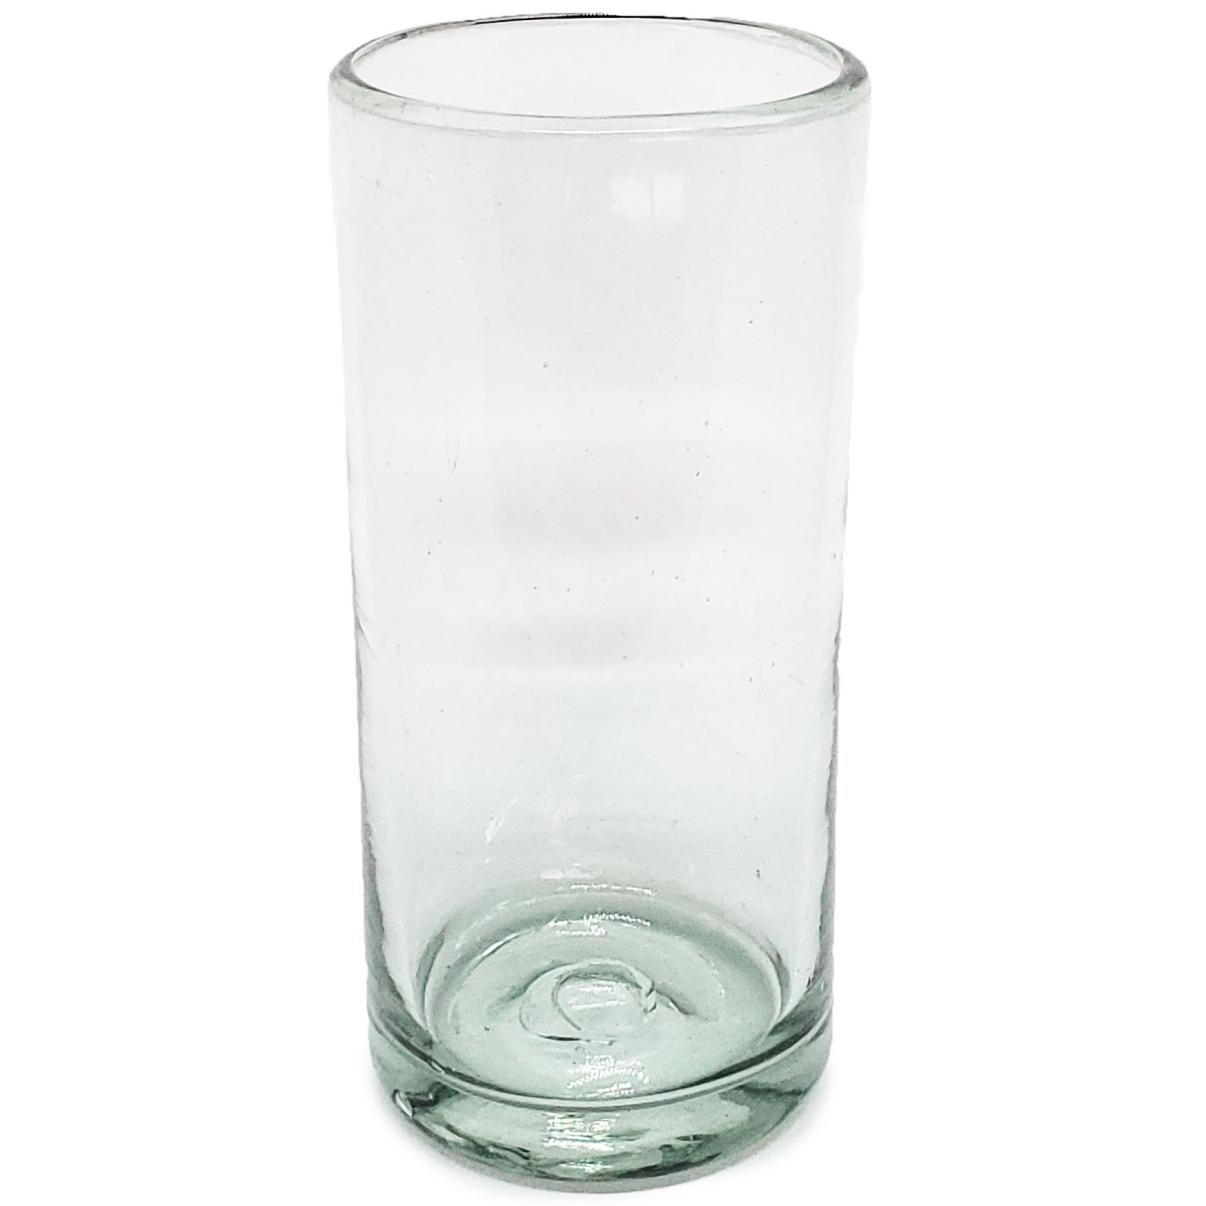 VIDRIO SOPLADO al Mayoreo / vasos Jumbo transparentes, 20 oz, Vidrio Reciclado, Libre de Plomo y Toxinas / ste clsico juego de vasos jumbo est hecho con vidrio reciclado. Contiene pequeas burbujas atrapadas en el vaso.